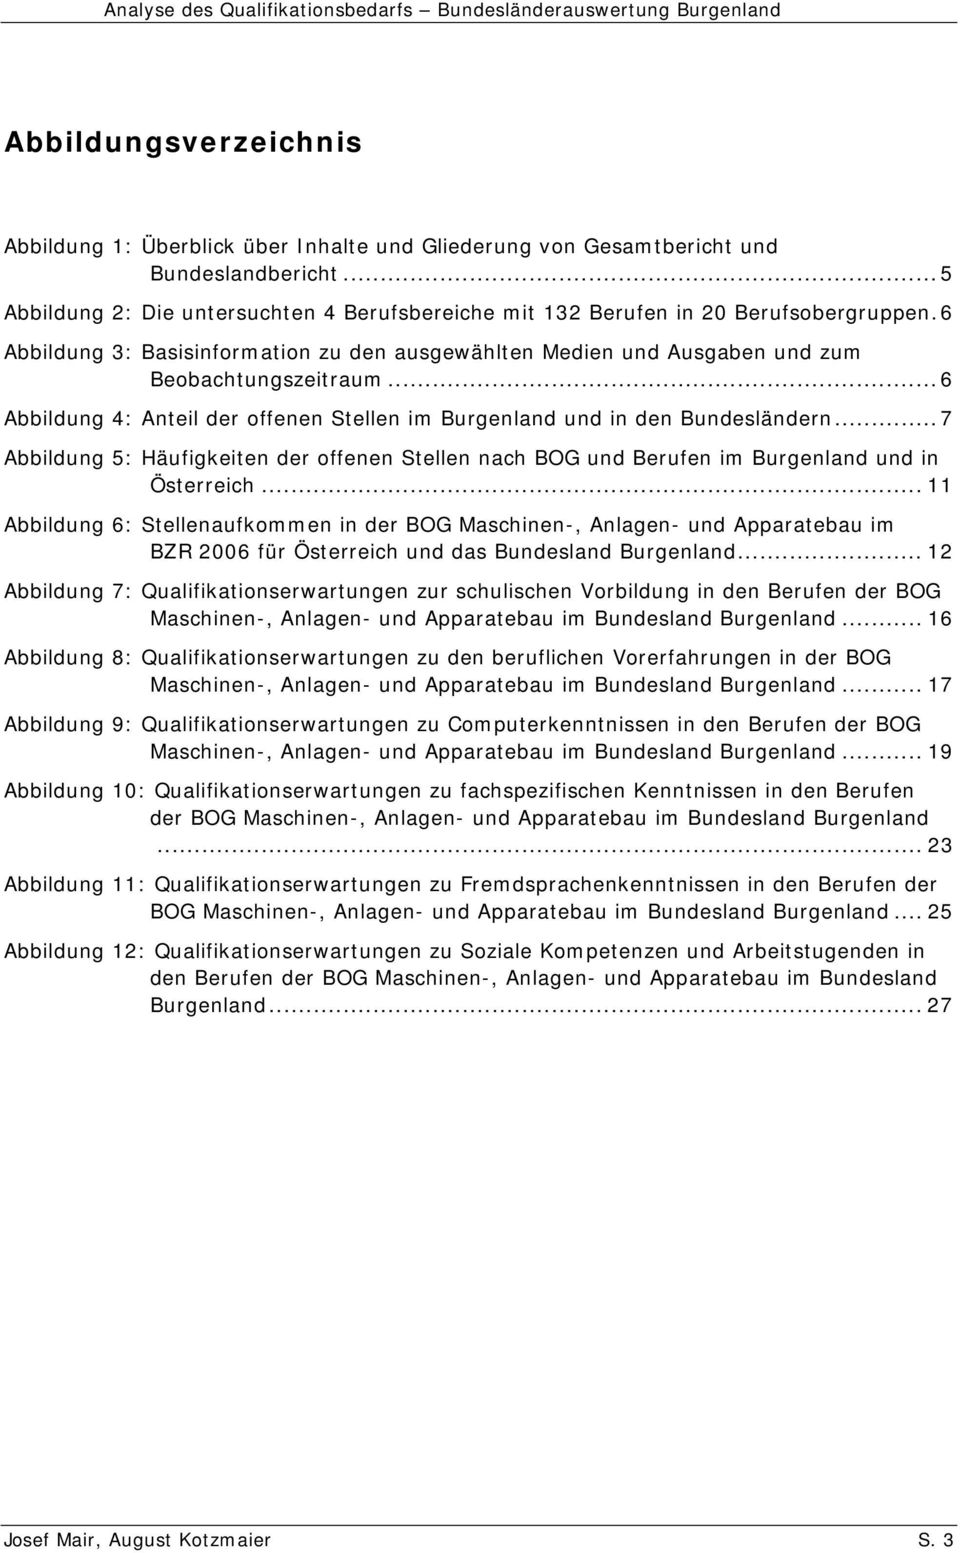 ..6 Abbildung 4: Anteil der offenen Stellen im Burgenland und in den Bundesländern...7 Abbildung 5: Häufigkeiten der offenen Stellen nach BOG und Berufen im Burgenland und in Österreich.